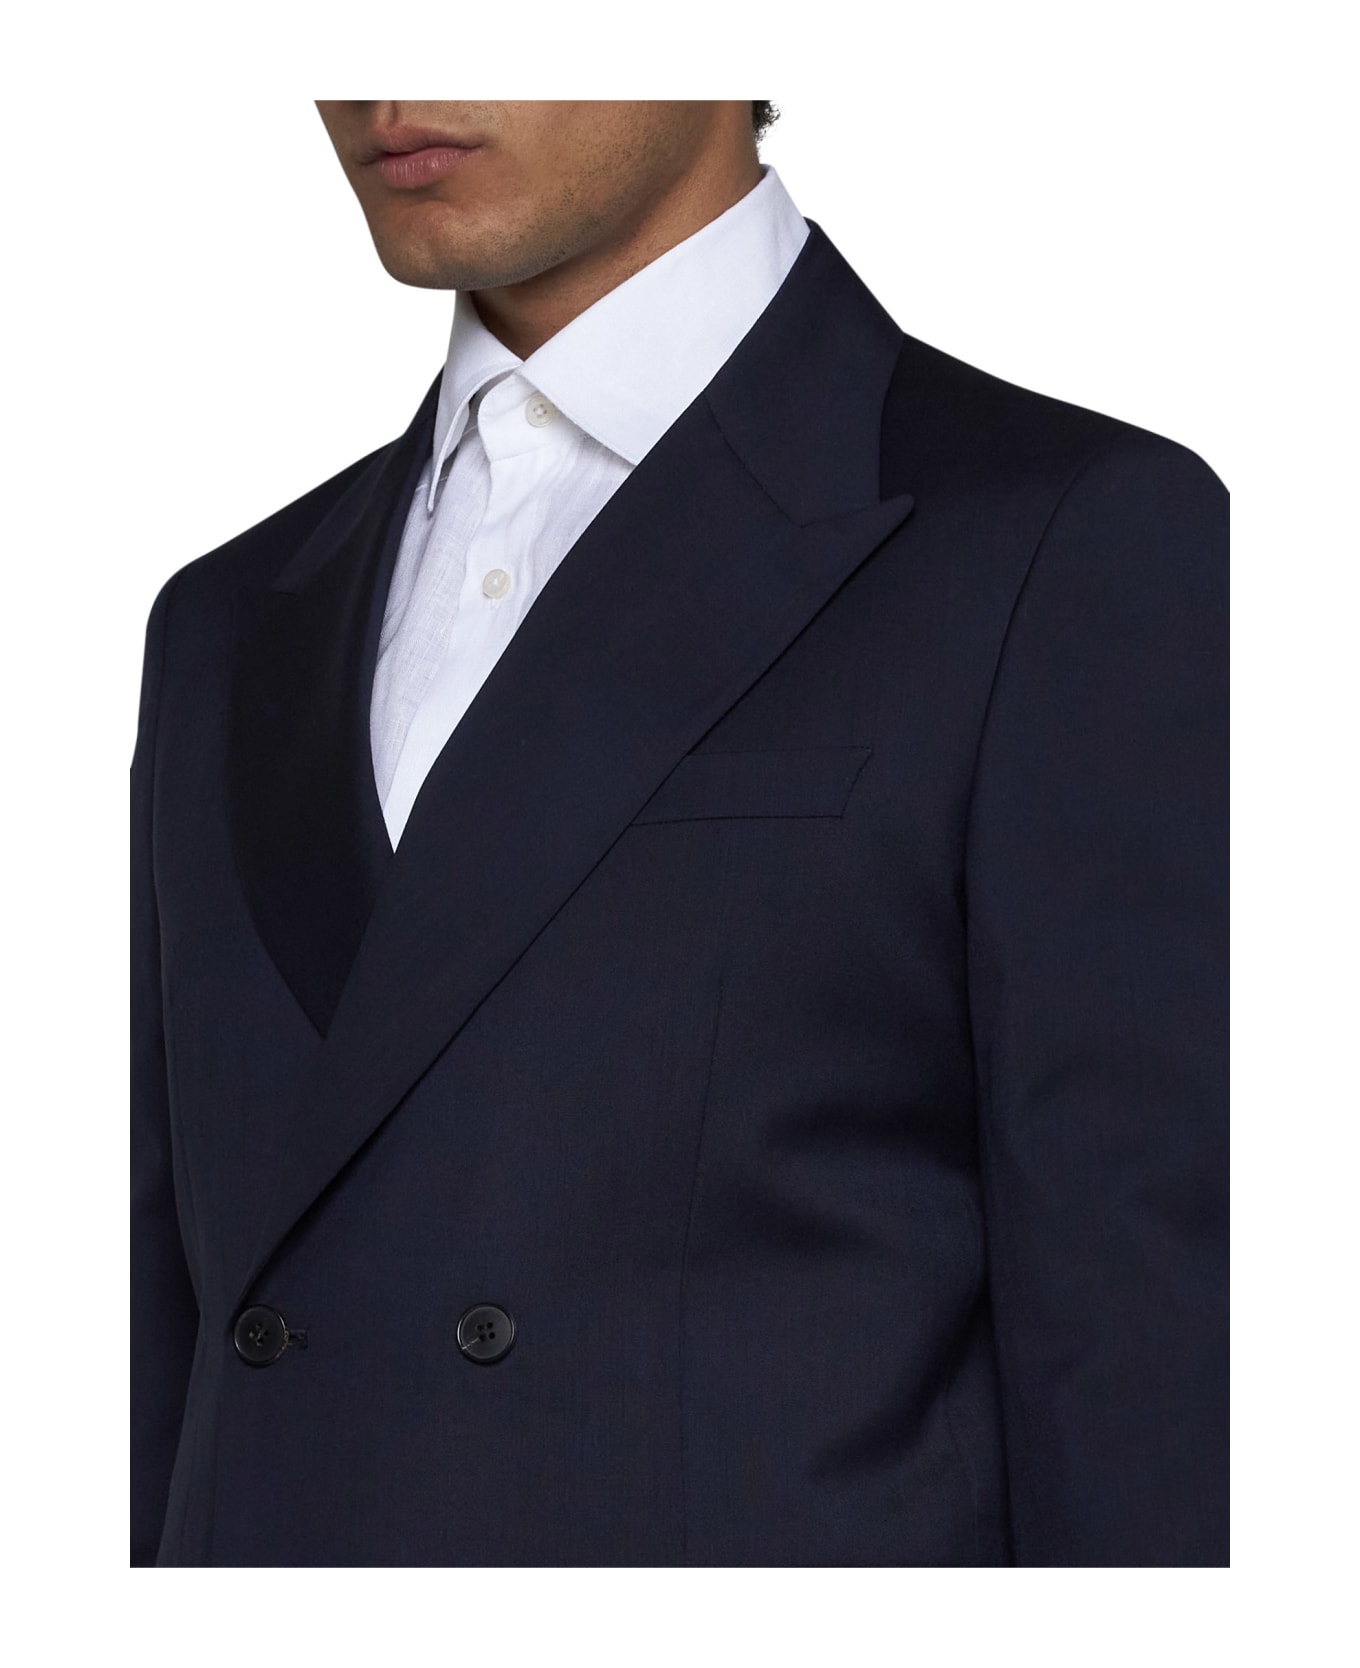 Low Brand Suit - Peacoat スーツ